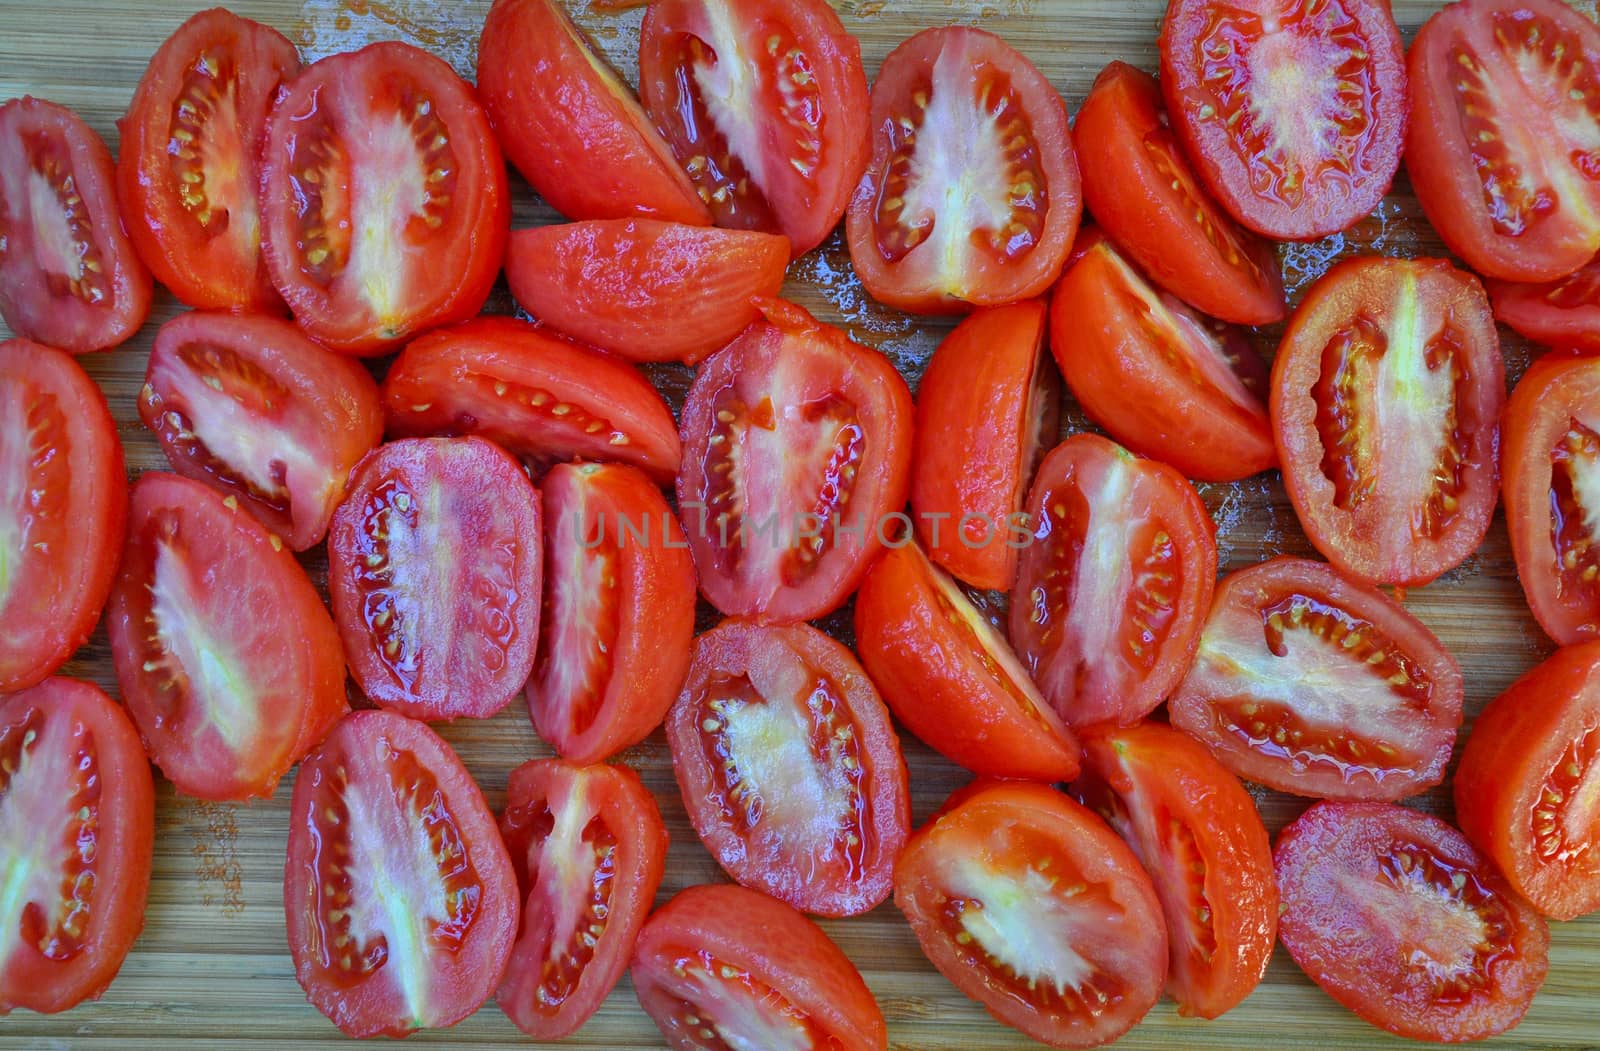 Freshly sliced tomatoes by ingperl